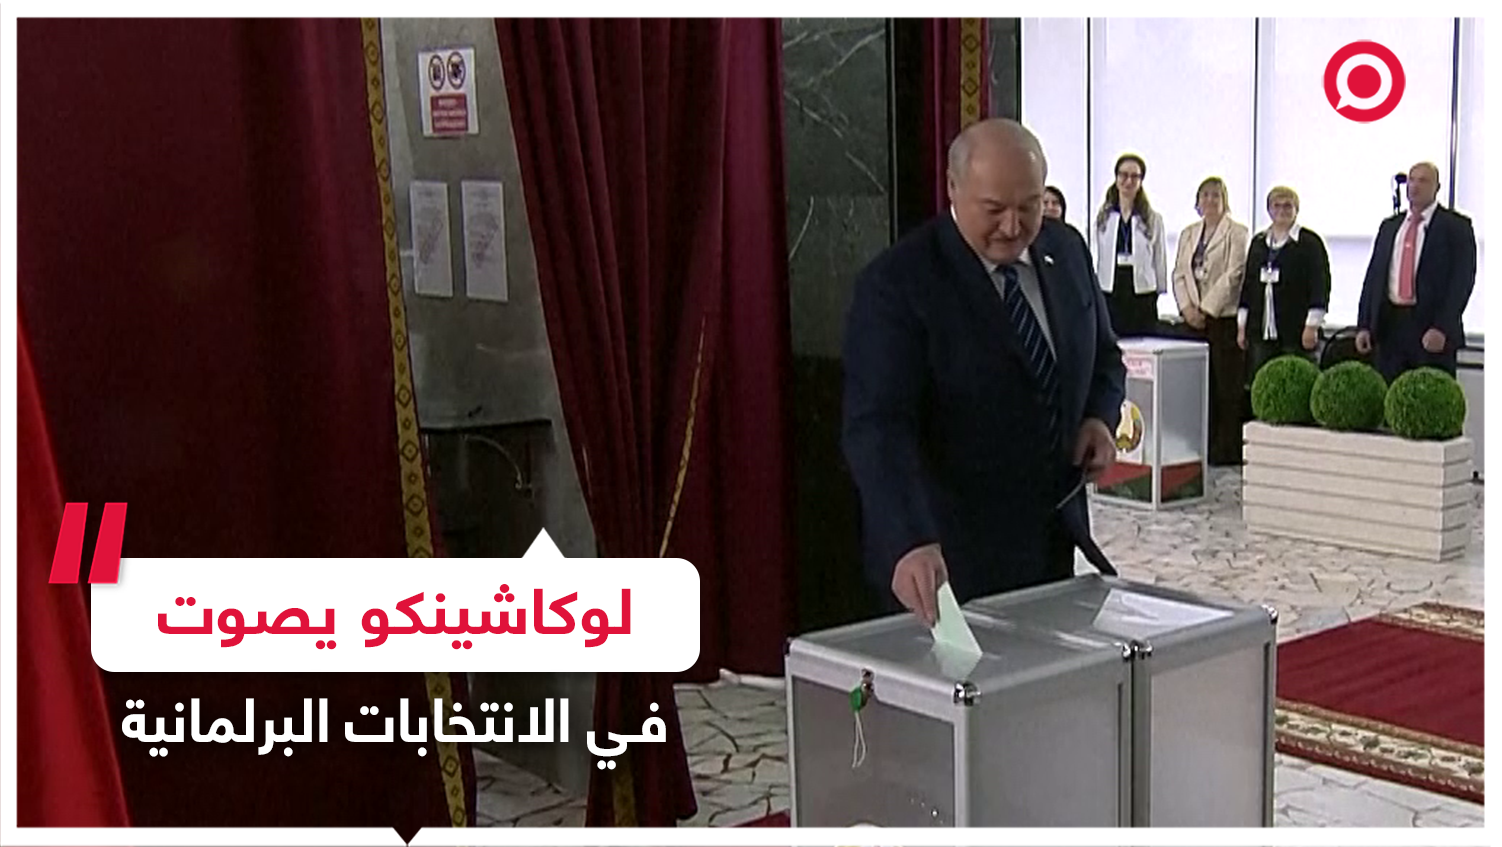 الرئيس البيلاروسي يدلي بصوته في الانتخابات البرلمانية والمحلية بالبلاد